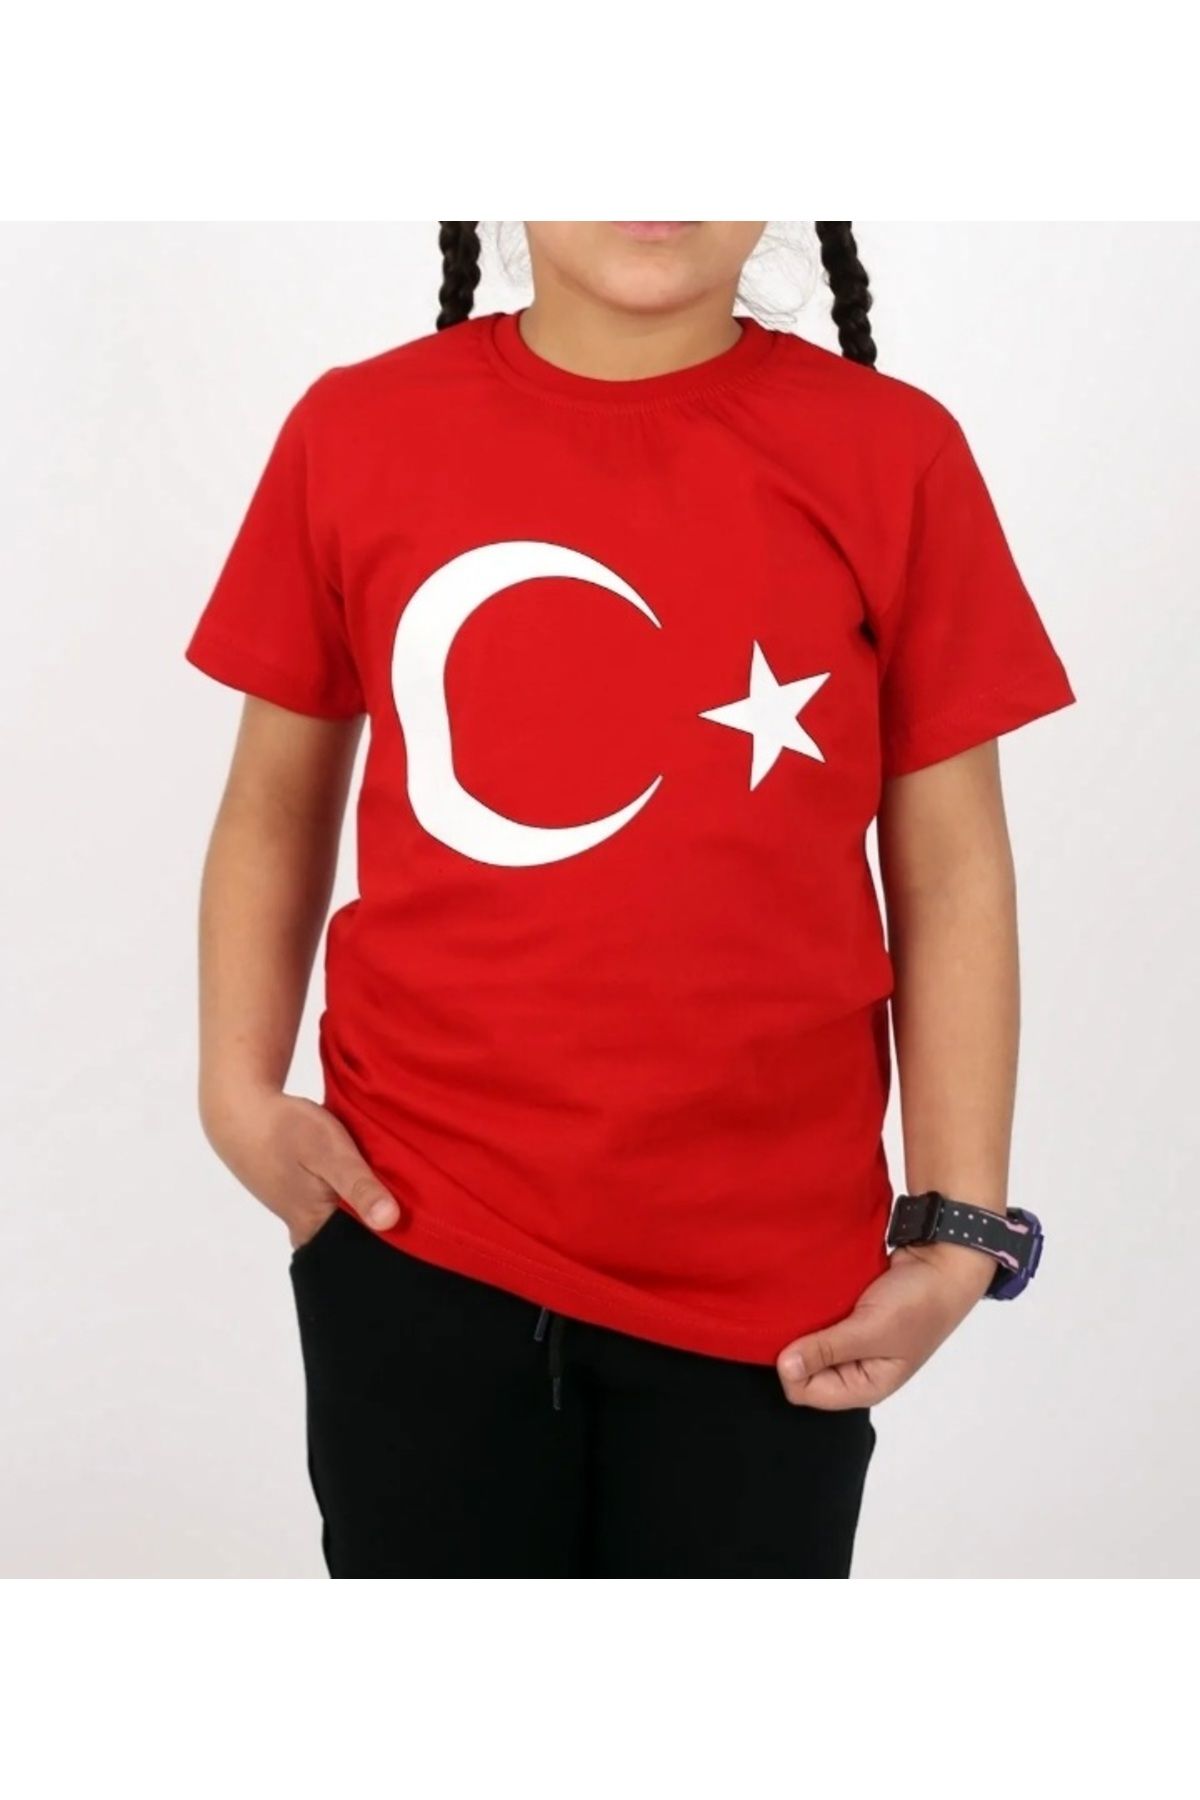 Esterella unisex çocuk türk bayrağı t-shirt/ türk bayrağı t-shirt/ay yıldızlı t-shirt